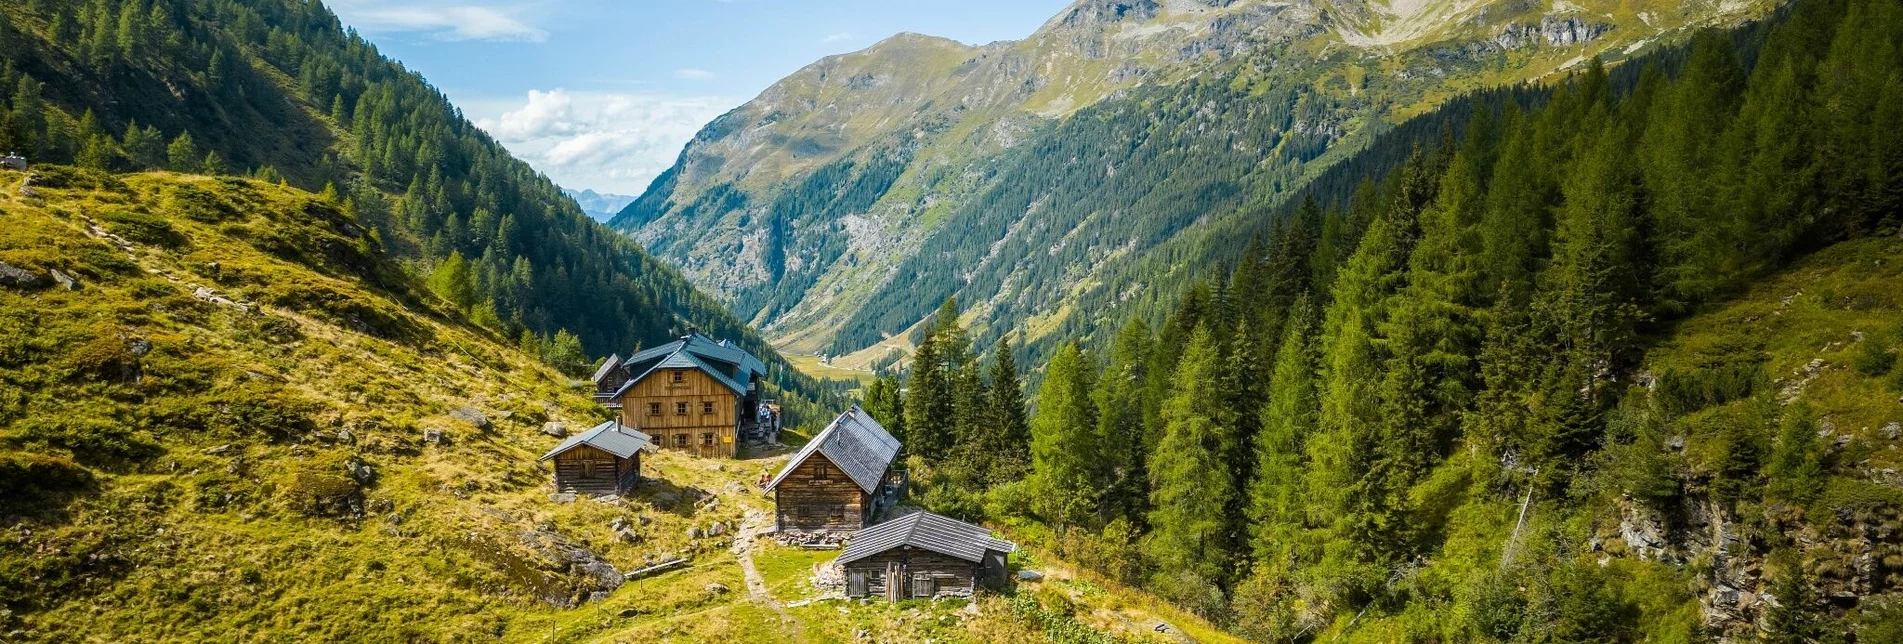 Wanderung Preintalerhütte - Schwarzensee | Schladminger Tauern Höhenweg: Etappe 05 - Touren-Impression #1 | © Erlebnisregion Schladming-Dachstein